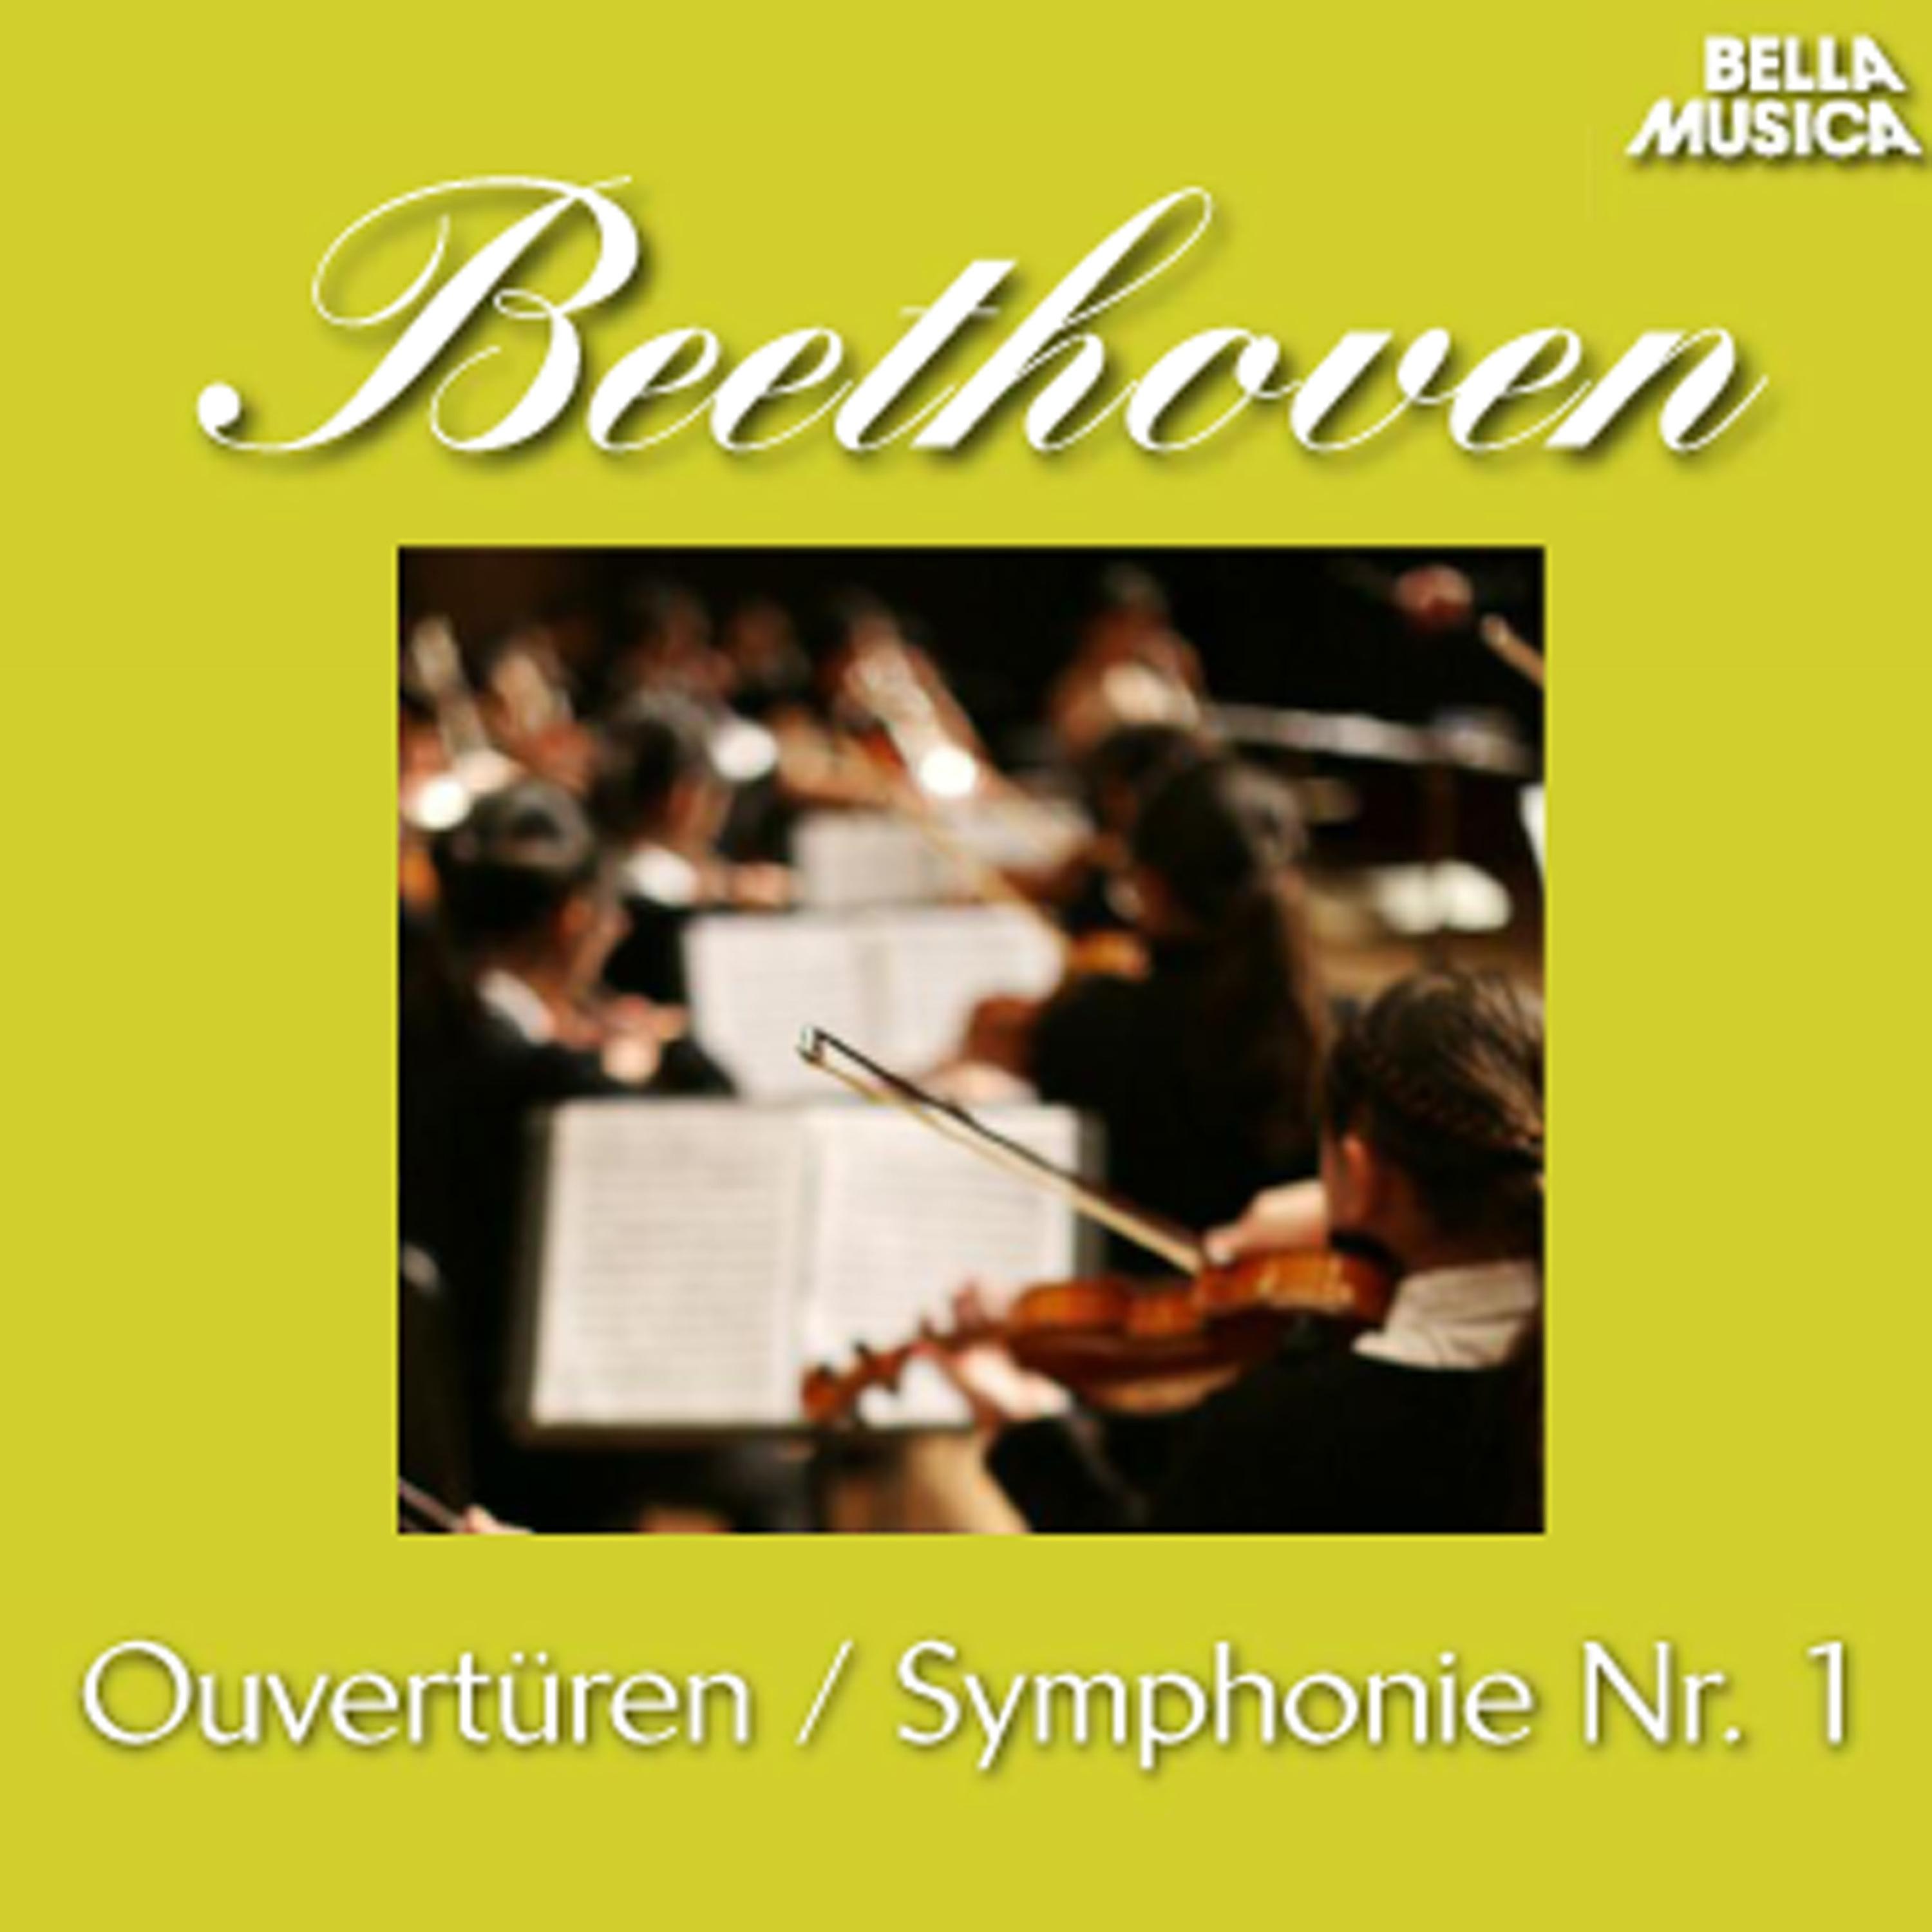 Leonoren Ouvertü re No. 3 fü r Orchester, Op. 72a